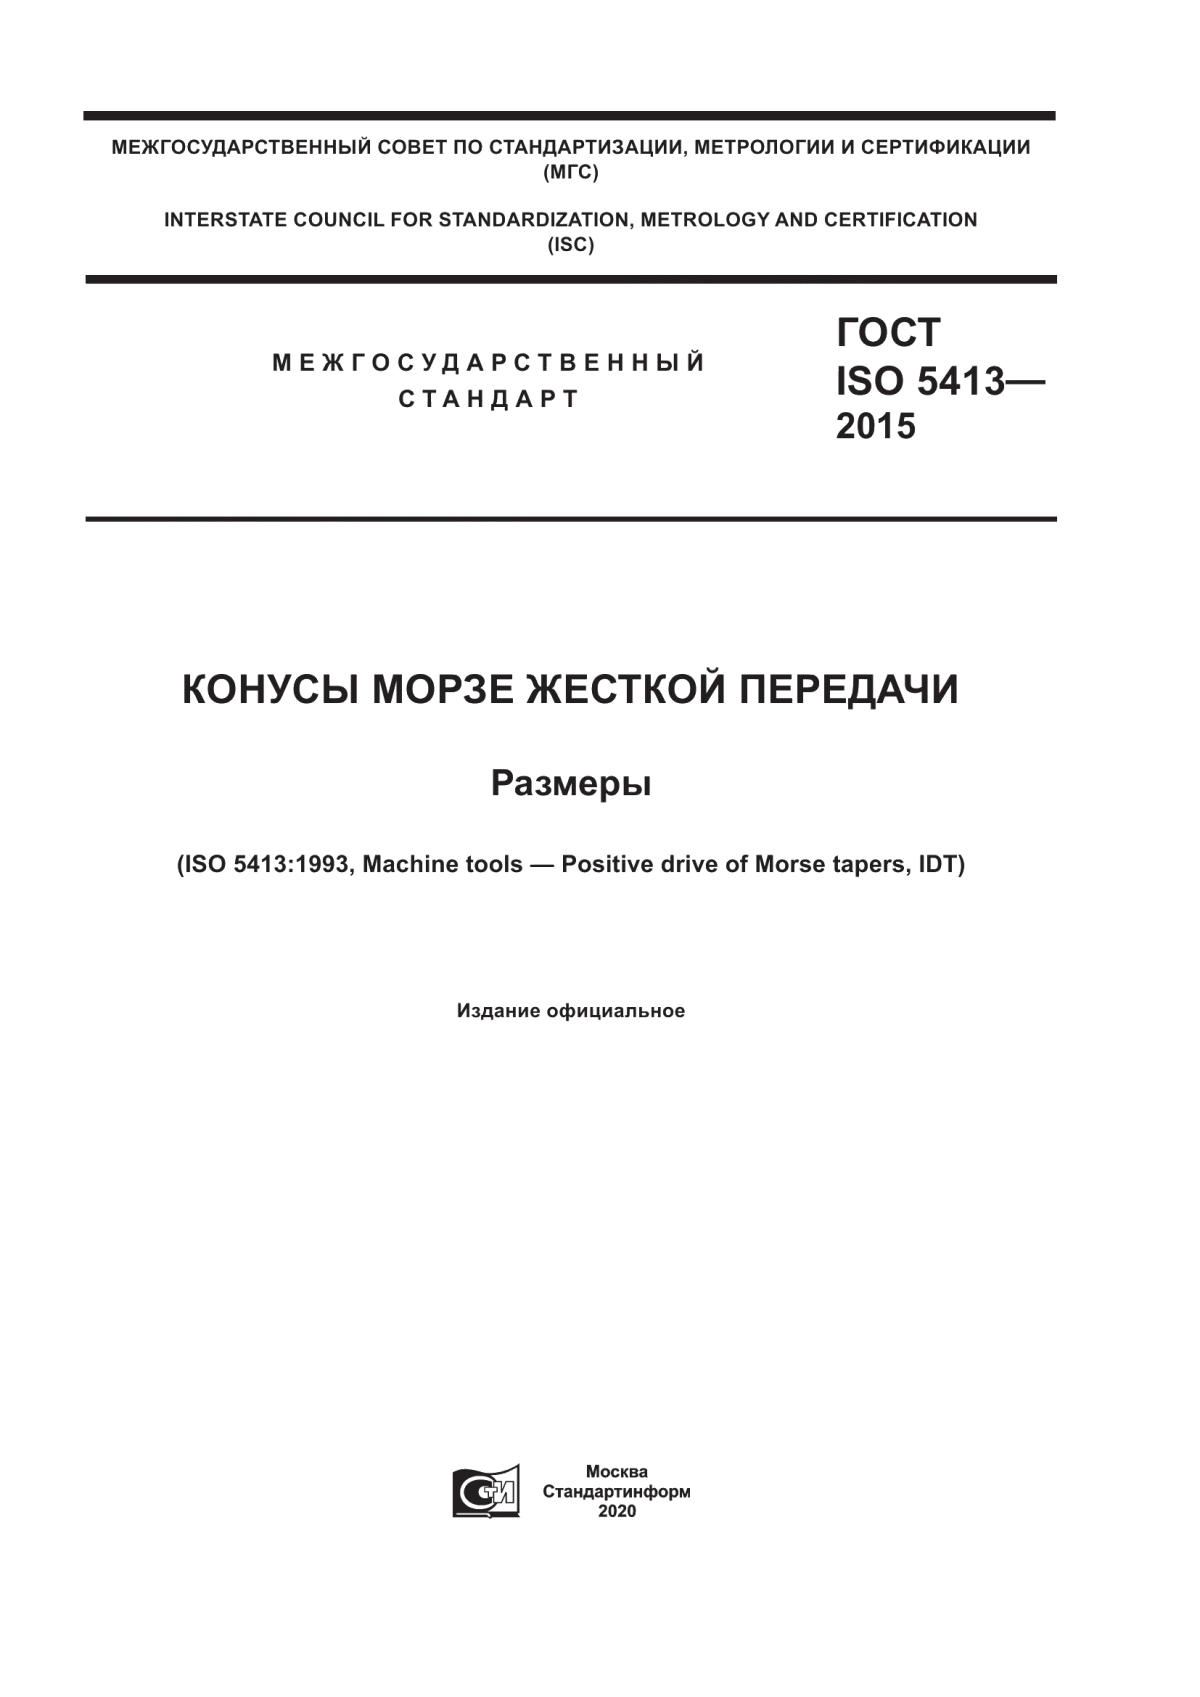 ГОСТ ISO 5413-2015 Конусы Морзе жесткой передачи. Размеры